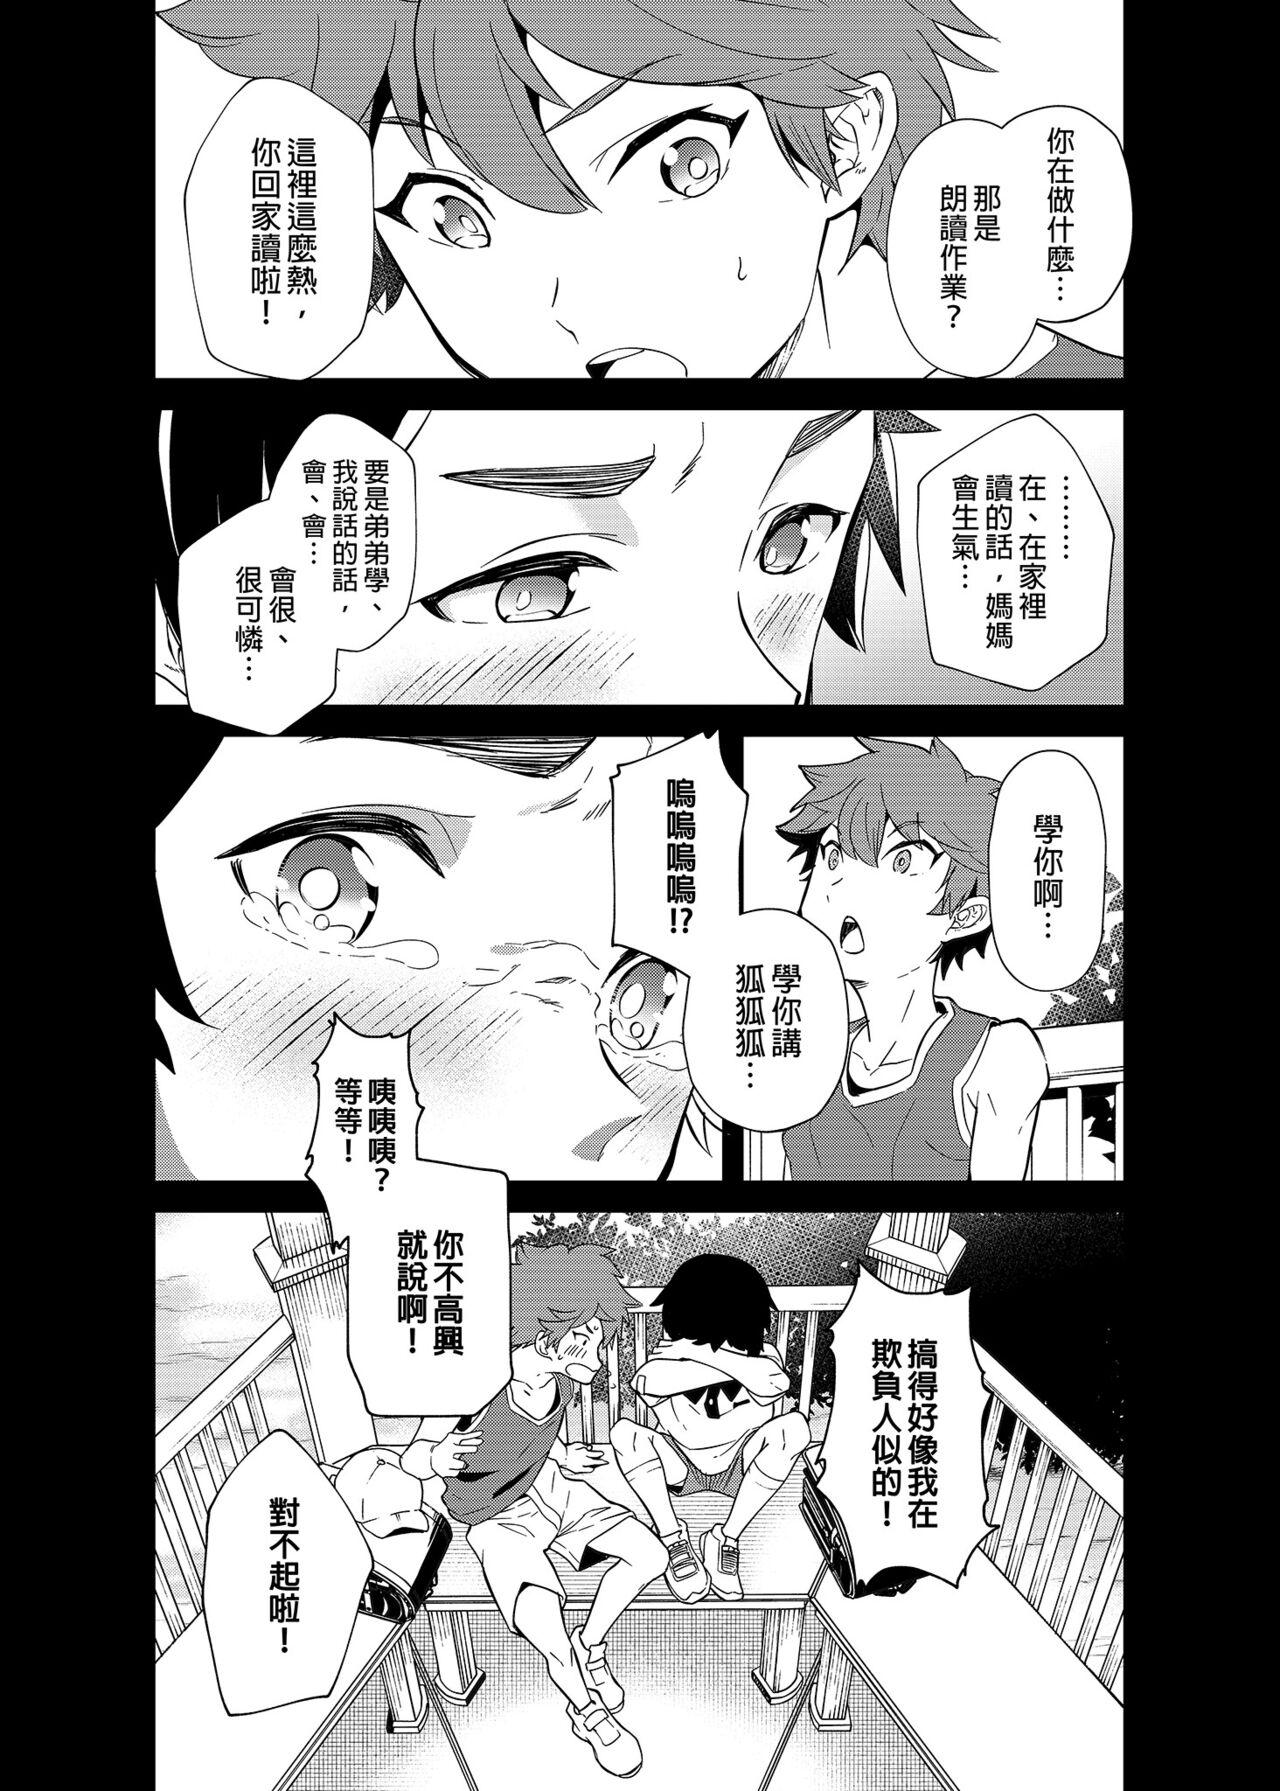 Gozada Kiritsu,ki o tsuke, rei! | 起立、注意、敬禮! - Original And - Page 11